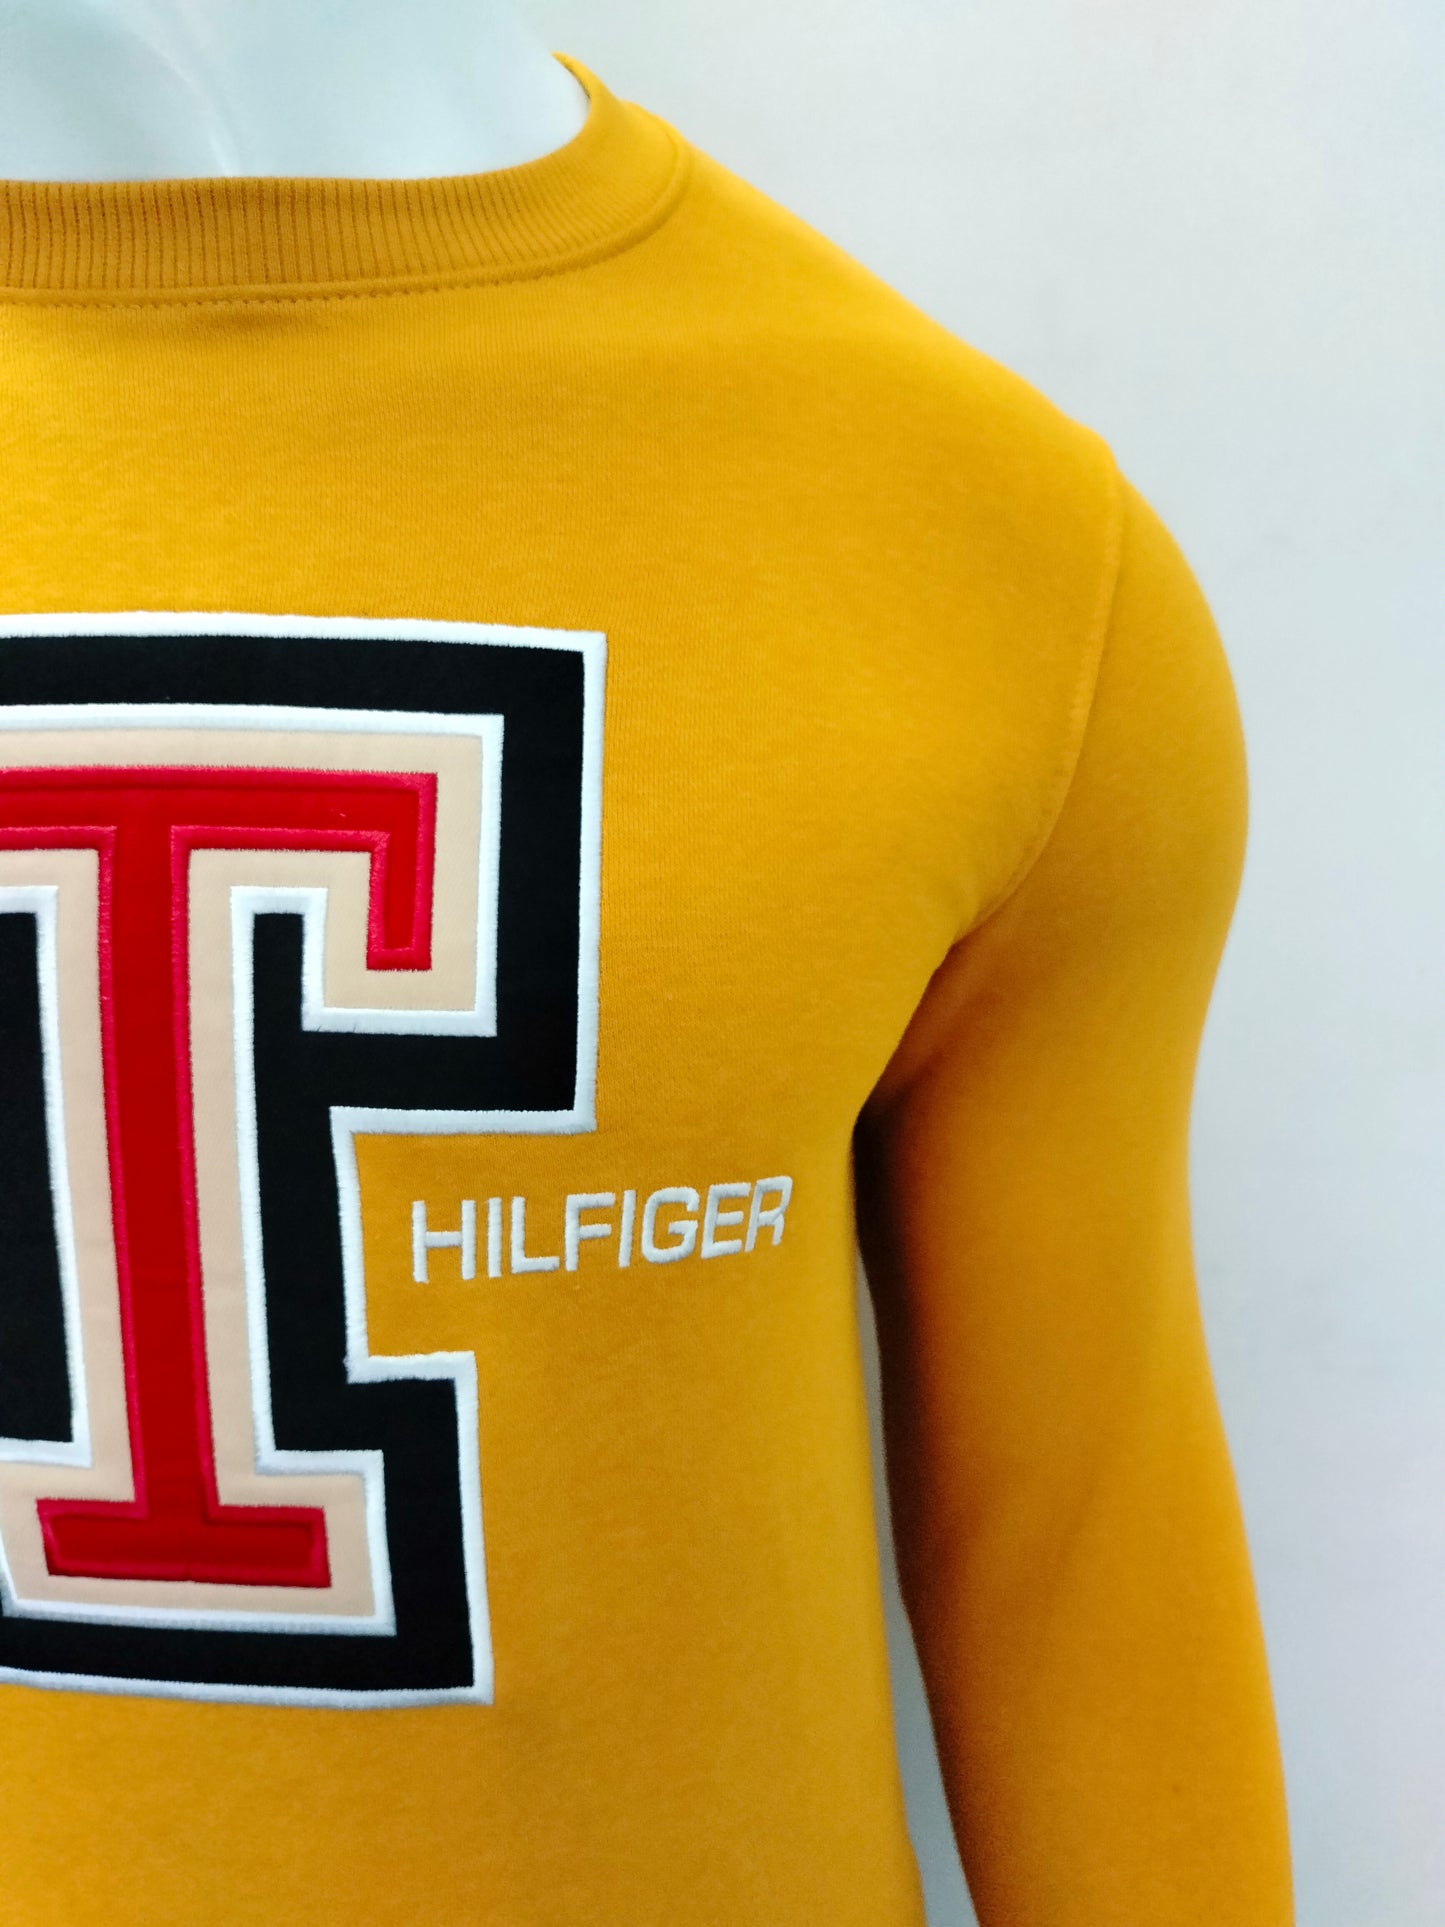 Tommy Hilfiger Sweatshirt Center Logo